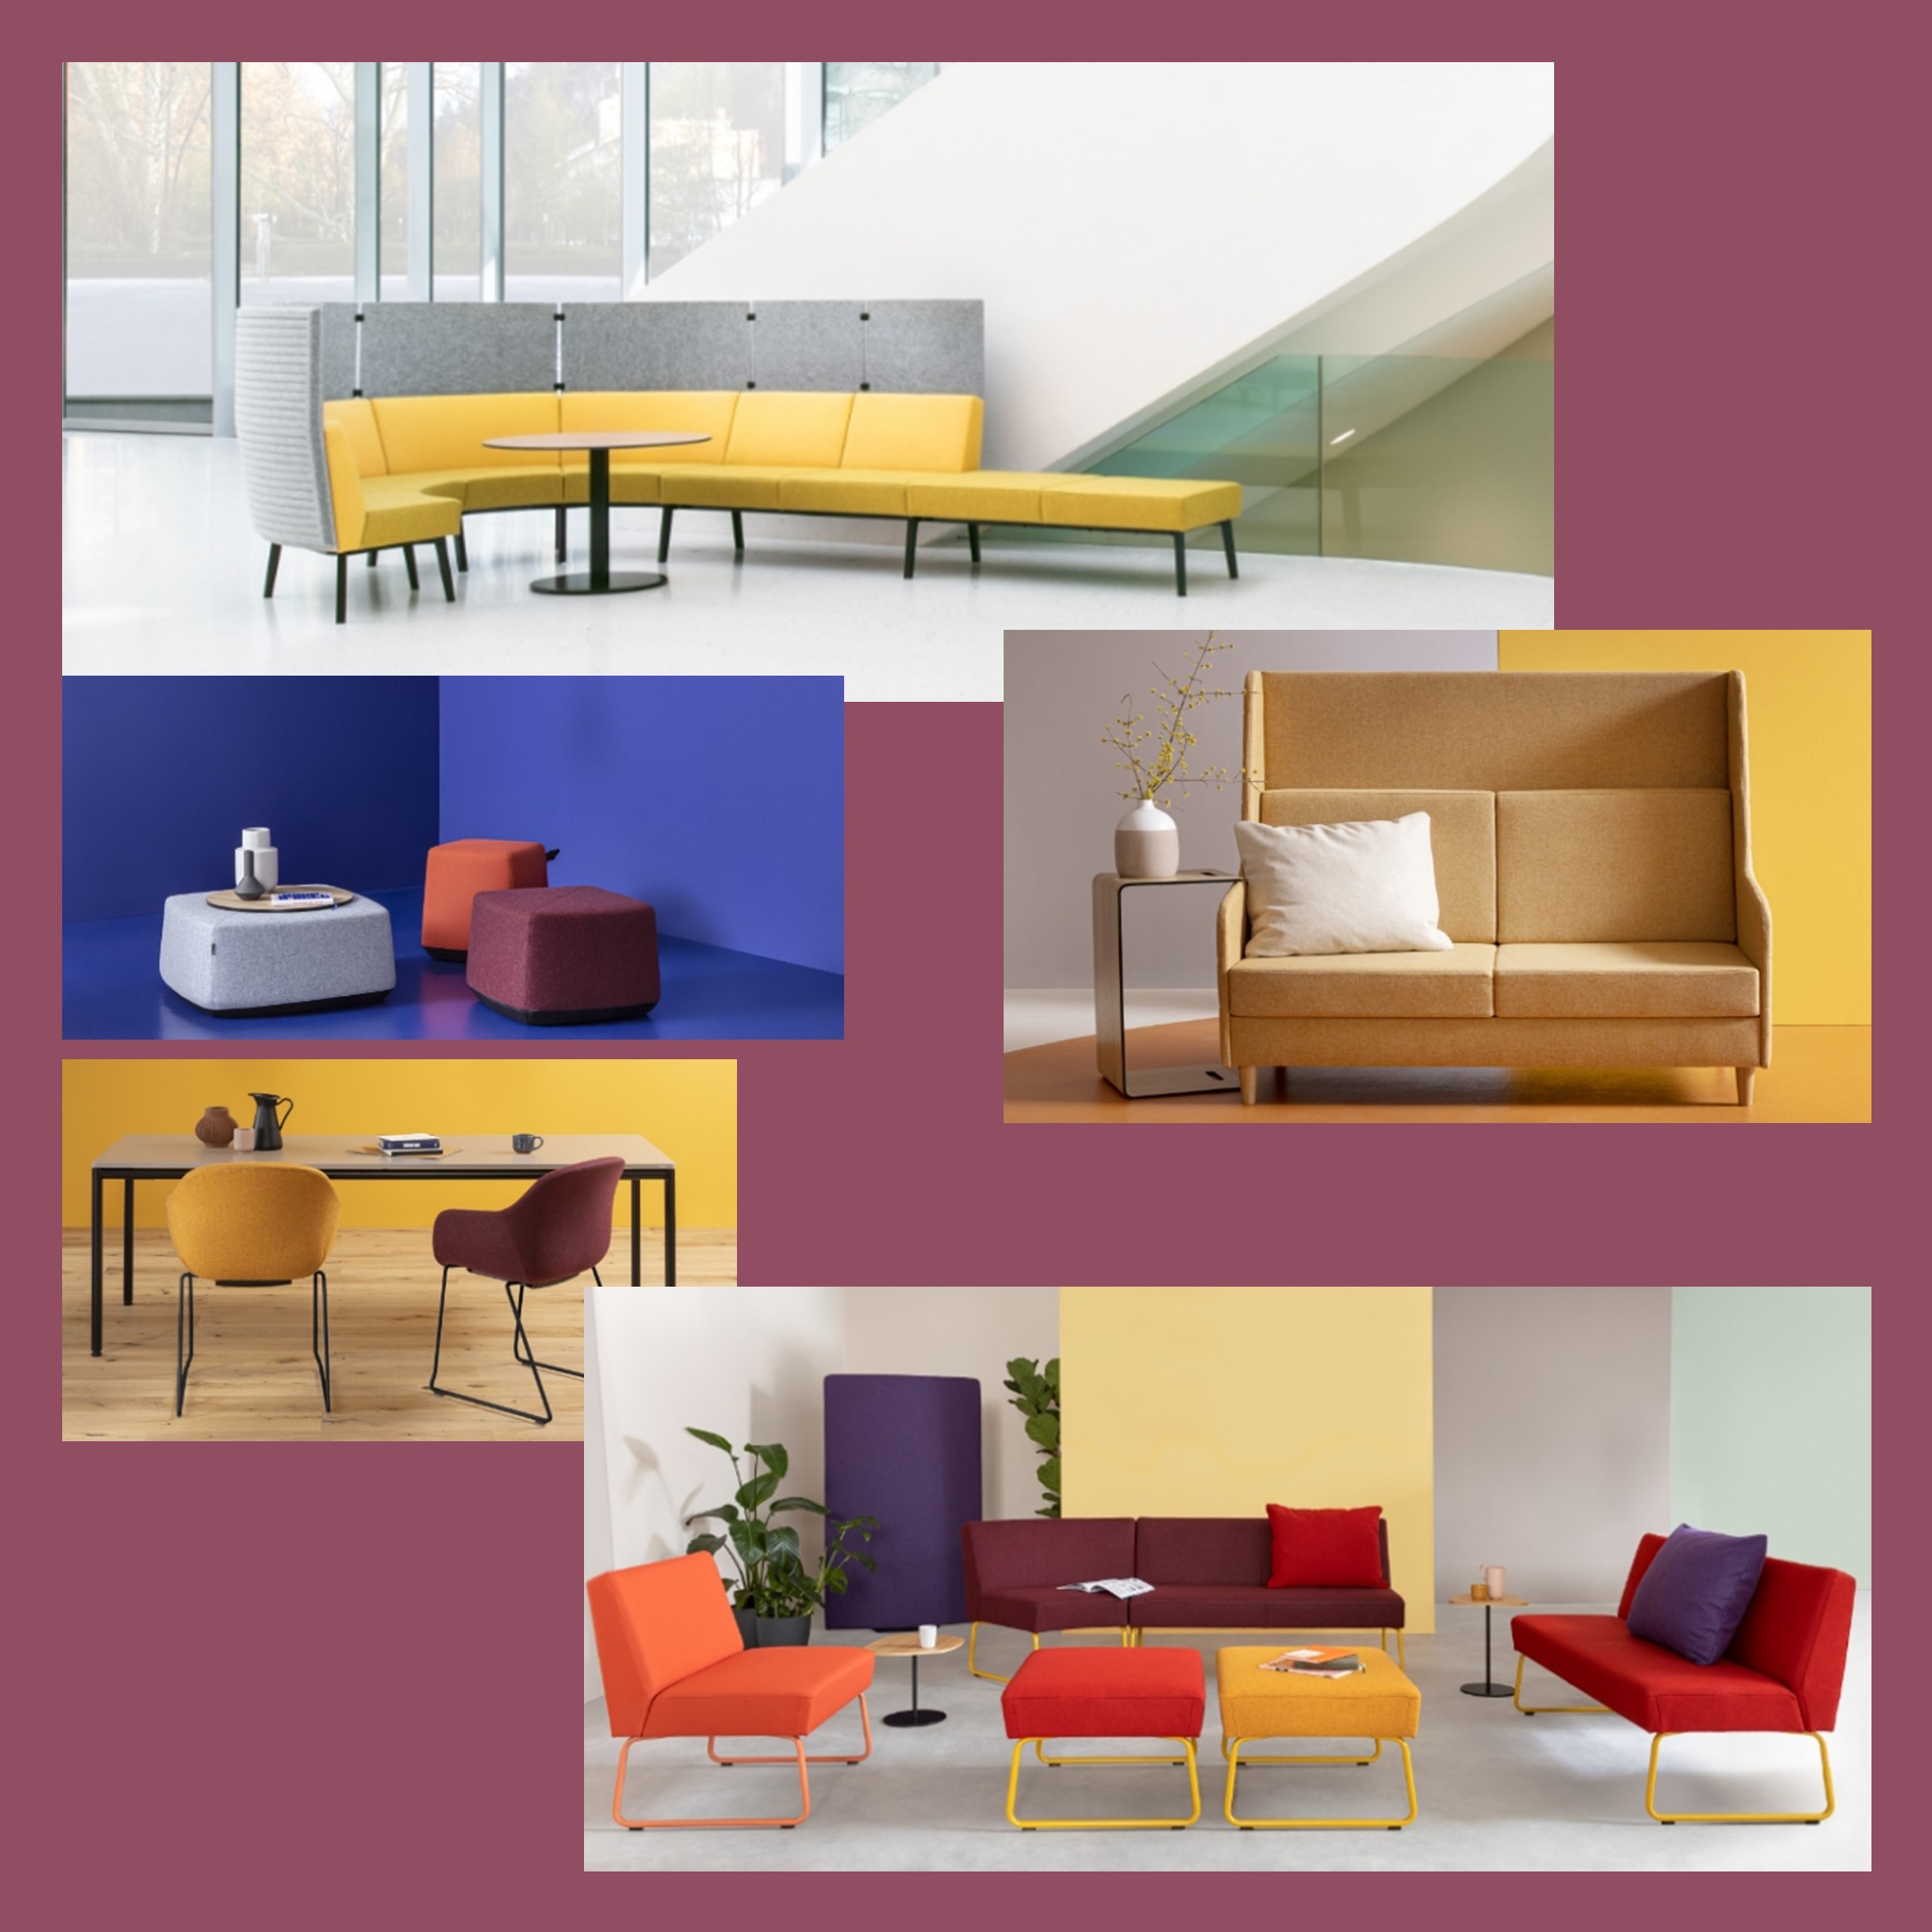 Ontdek de ultieme kantoor-lounge ervaring met Dauphin bij ITC Furniture